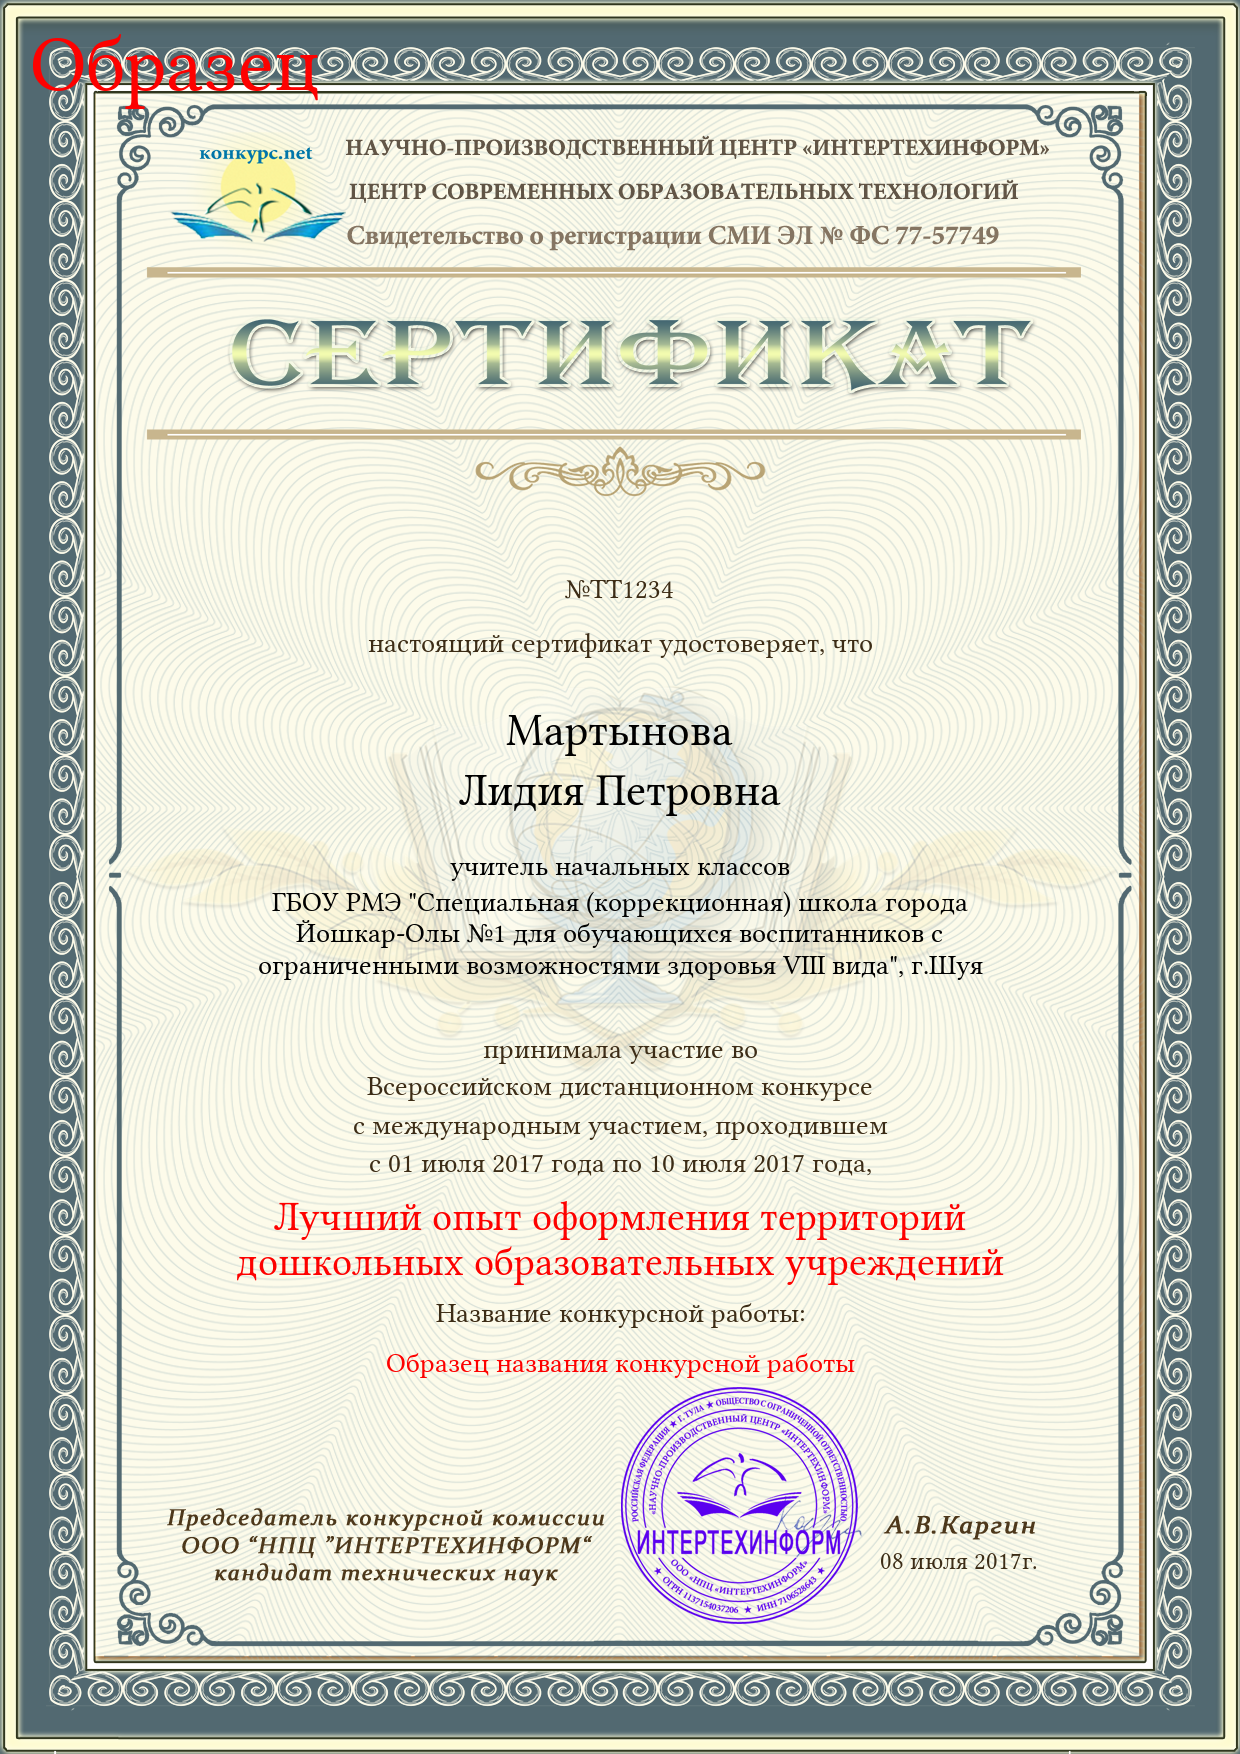 Сертификат участника конкурса чтецов шаблон скачать бесплатно :: windcopemis